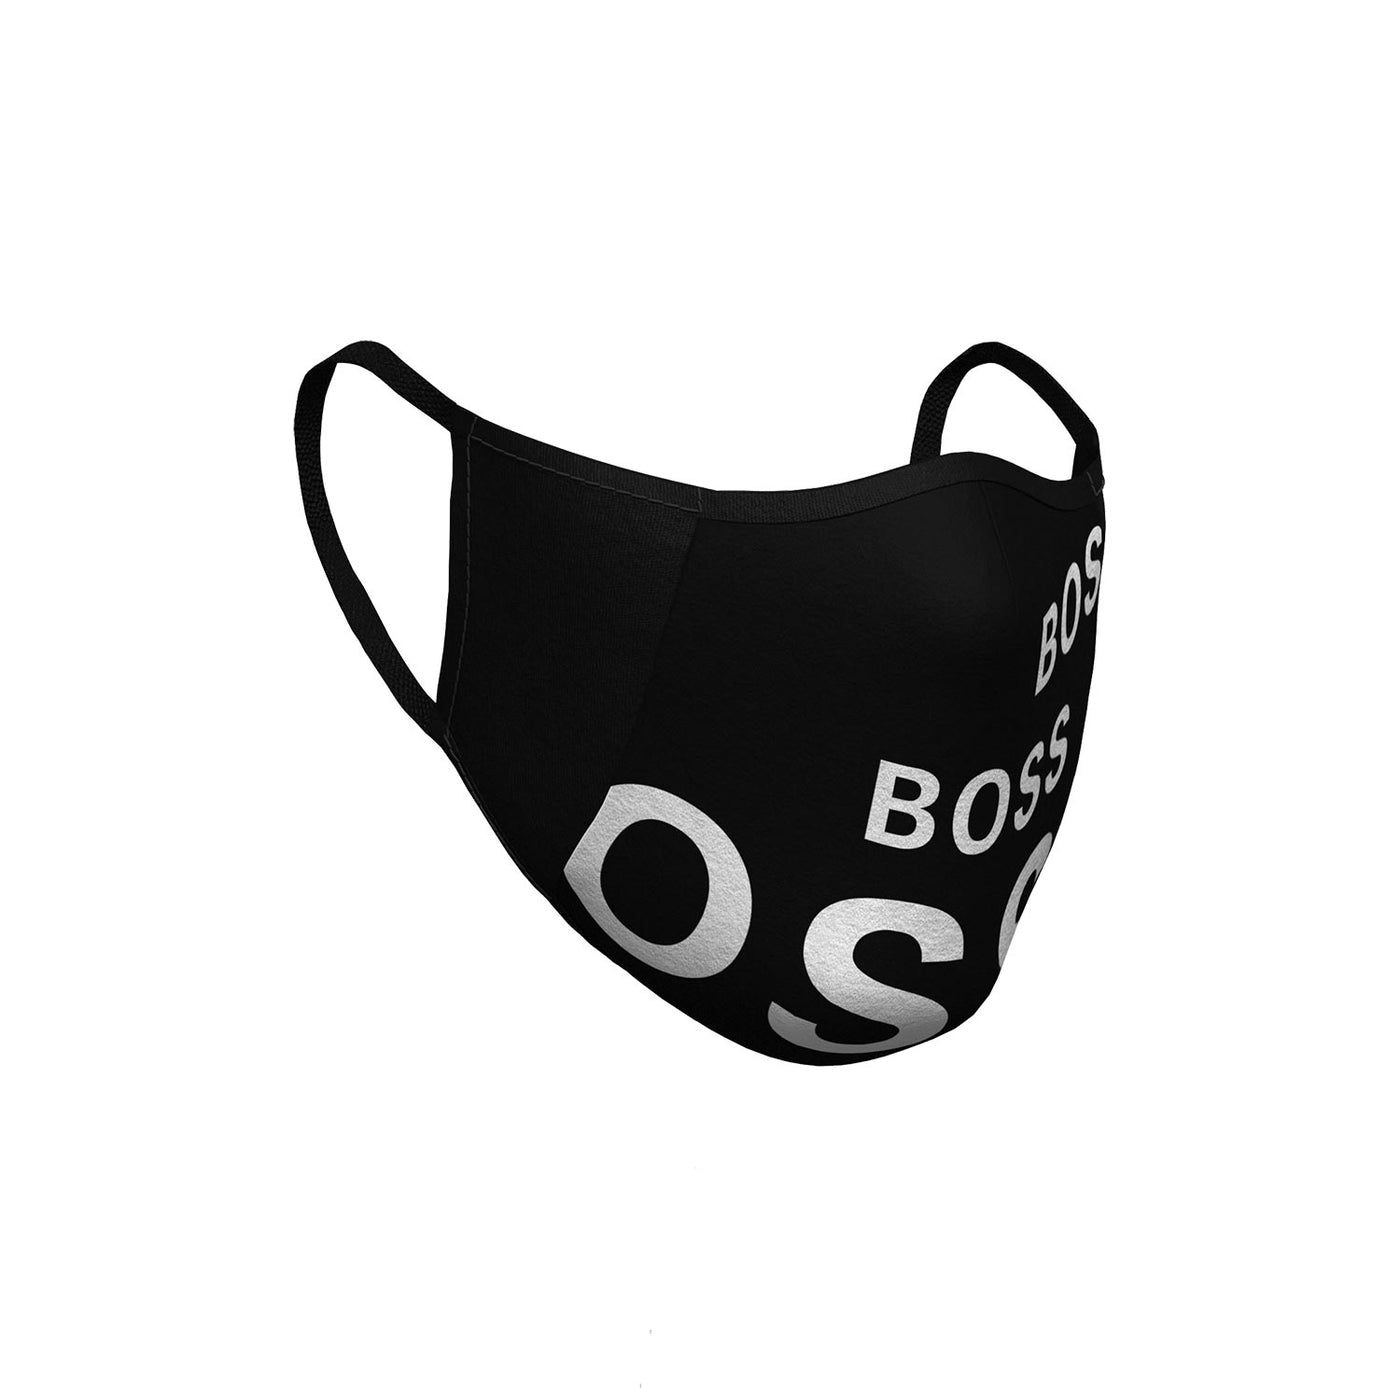 BOSS Face Mask in Black & White